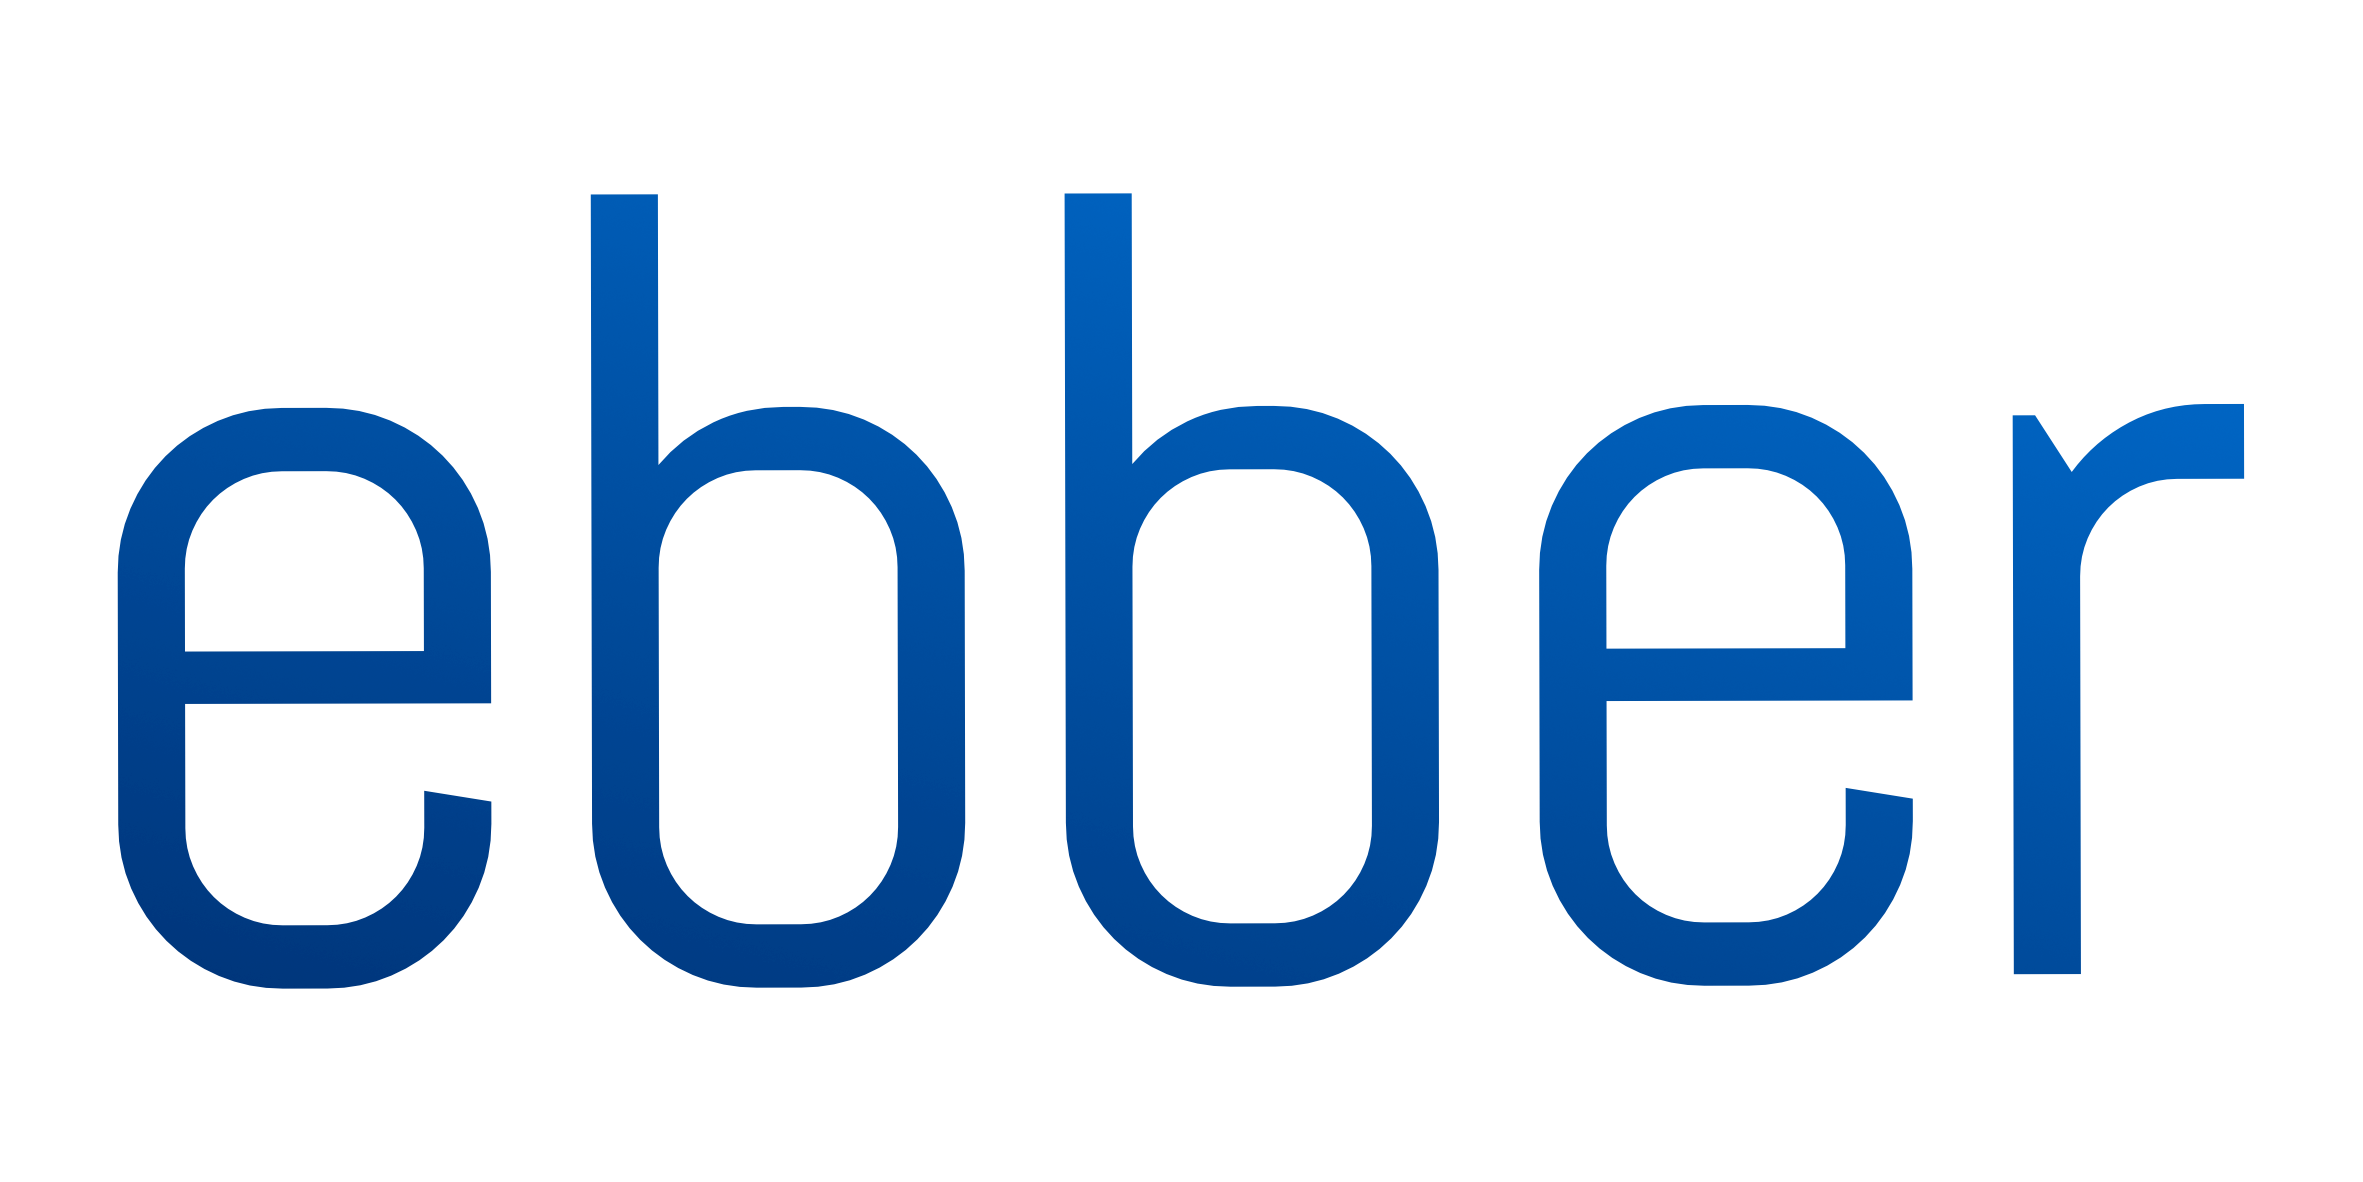 Logoen til Ebber